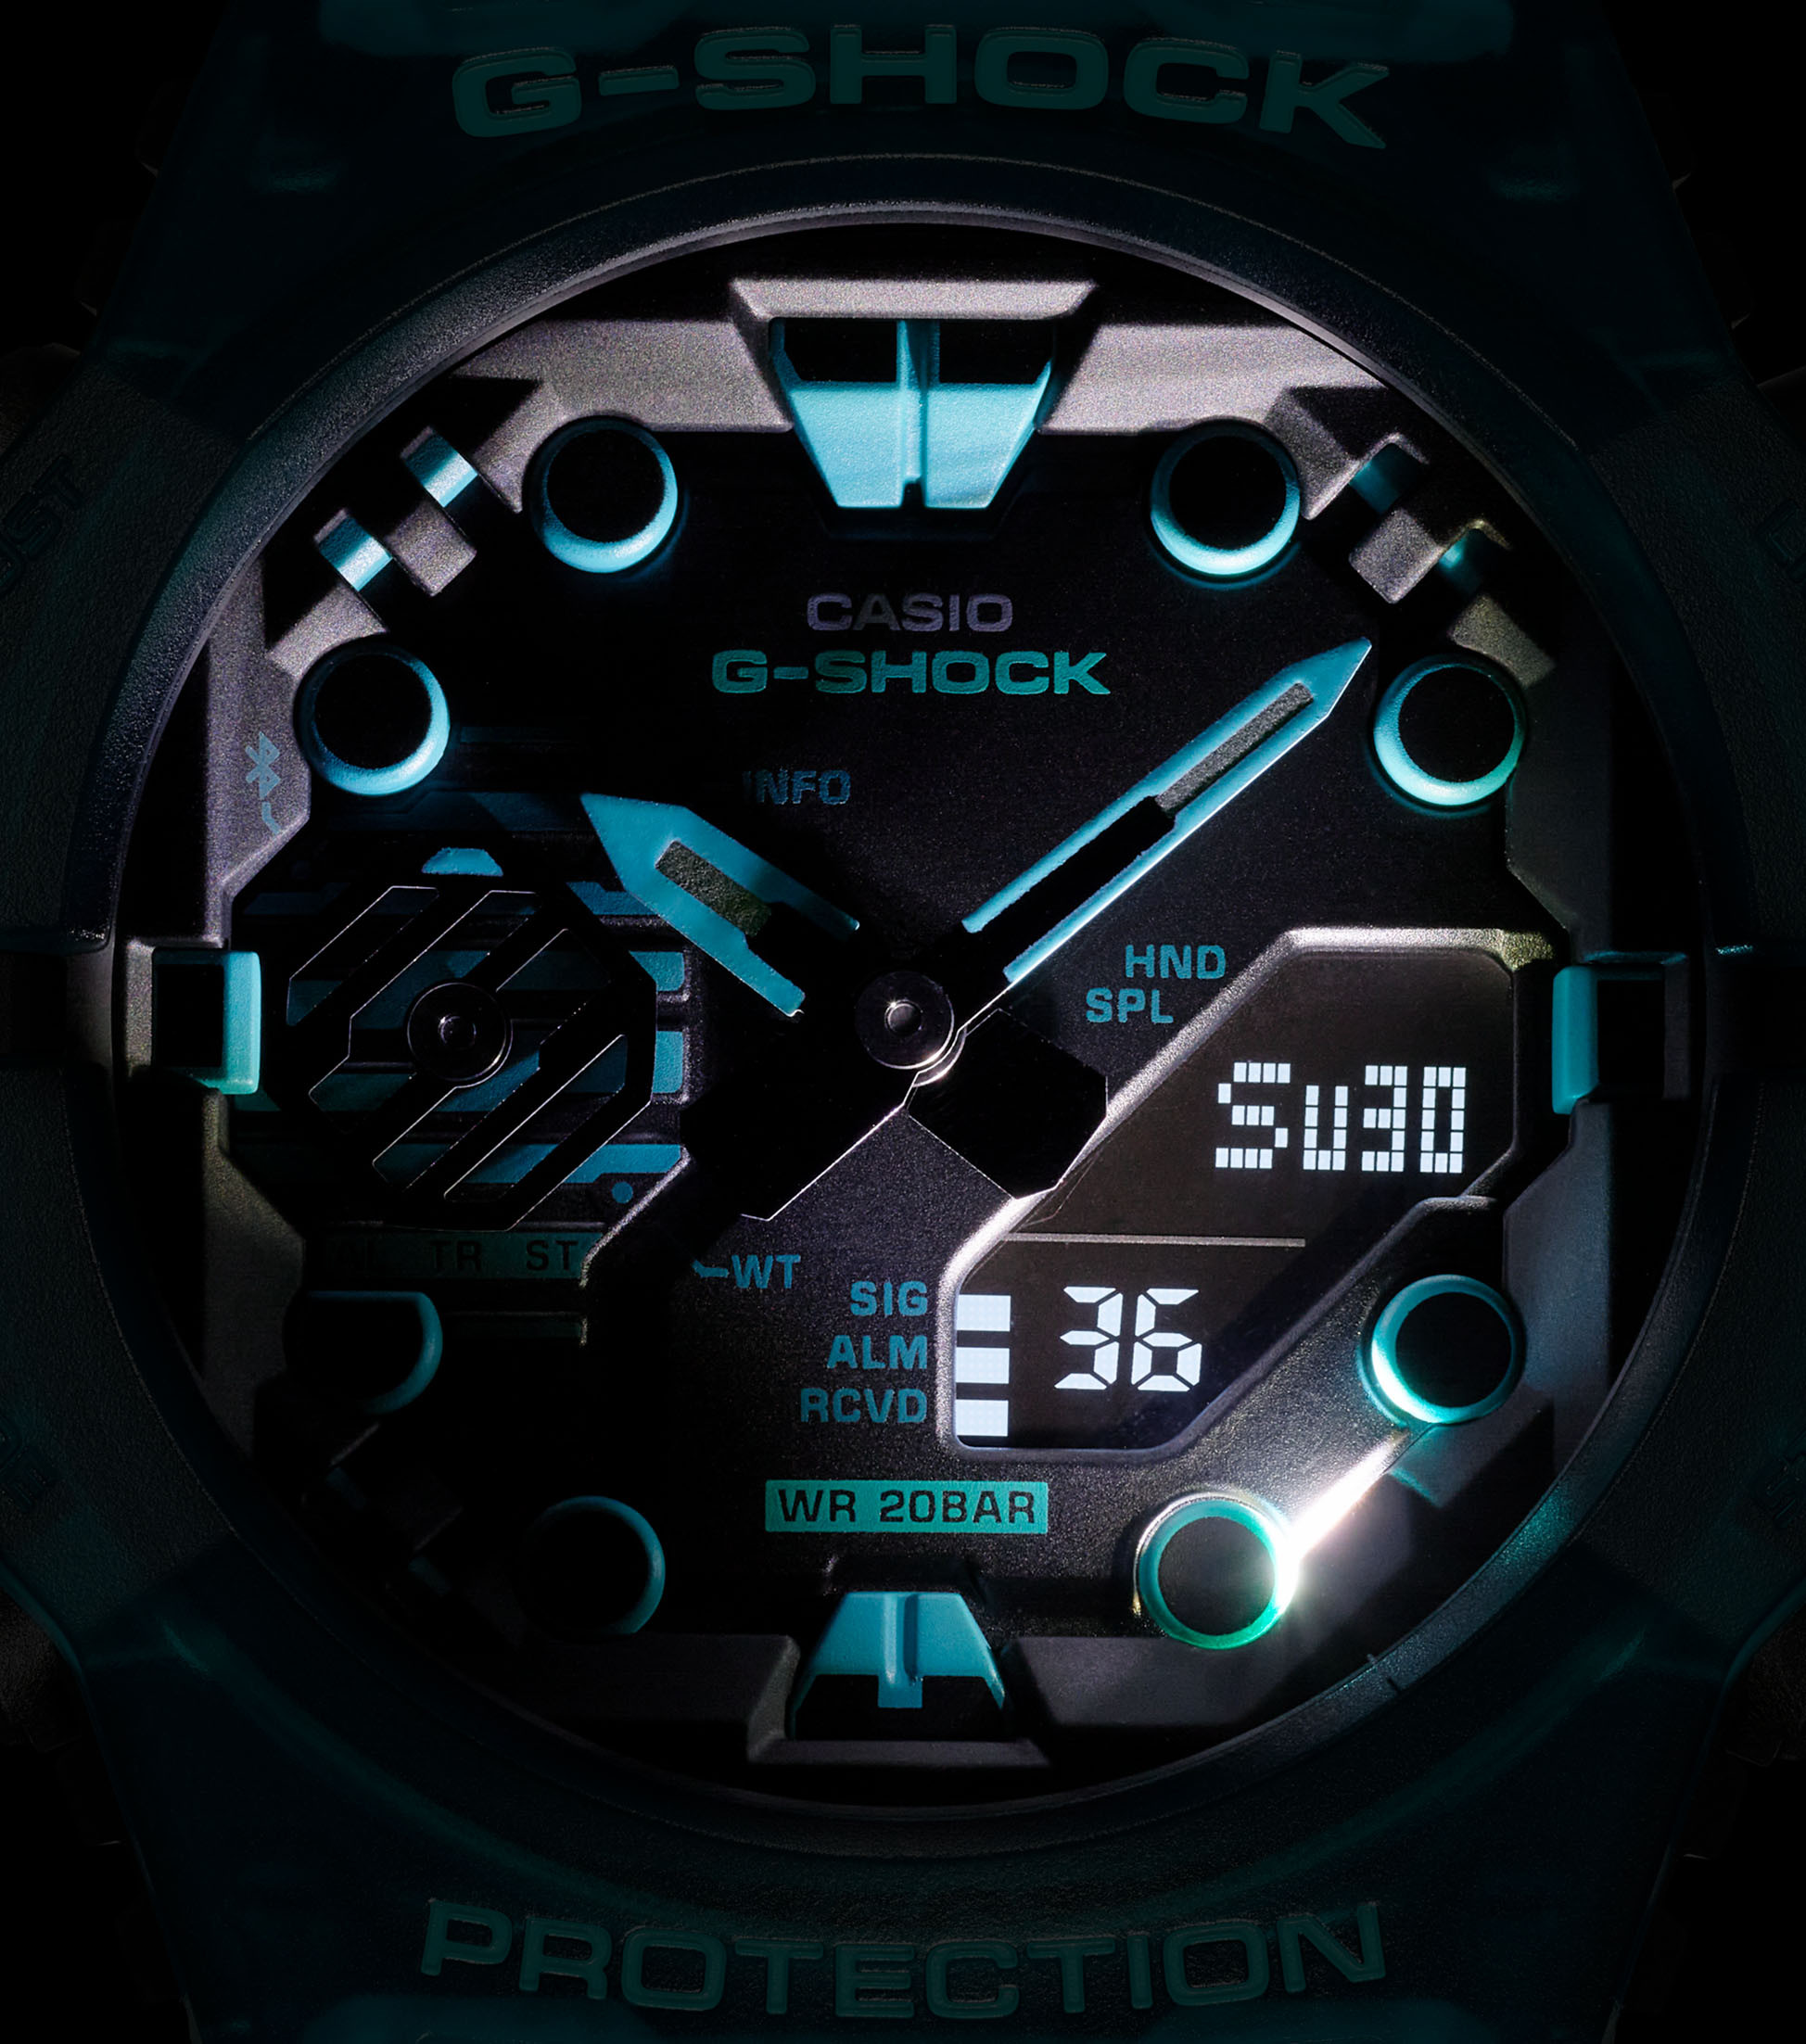 Casio Herren Armbanduhr G-Shock GA-B001G-2AER Solar Bluetooth Smart analog digital türkis